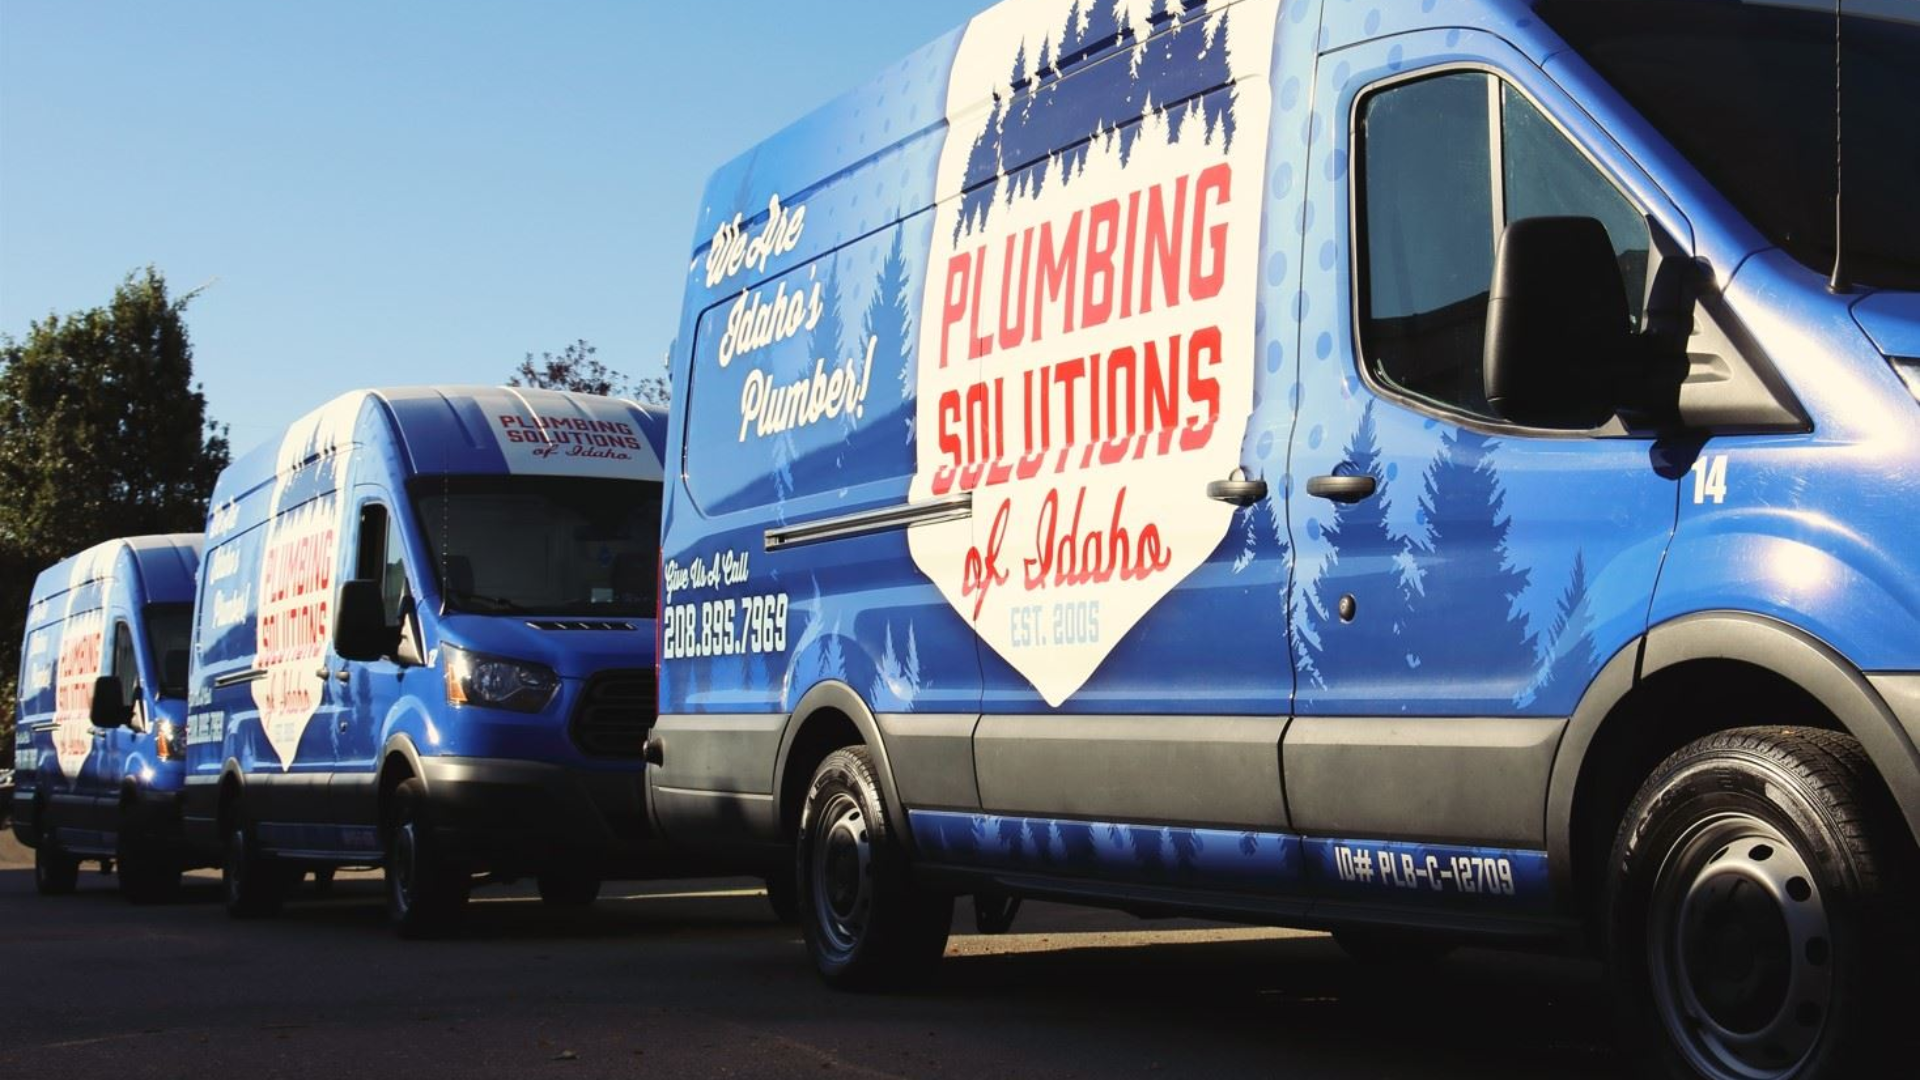 Plumbing Solutions of Idaho